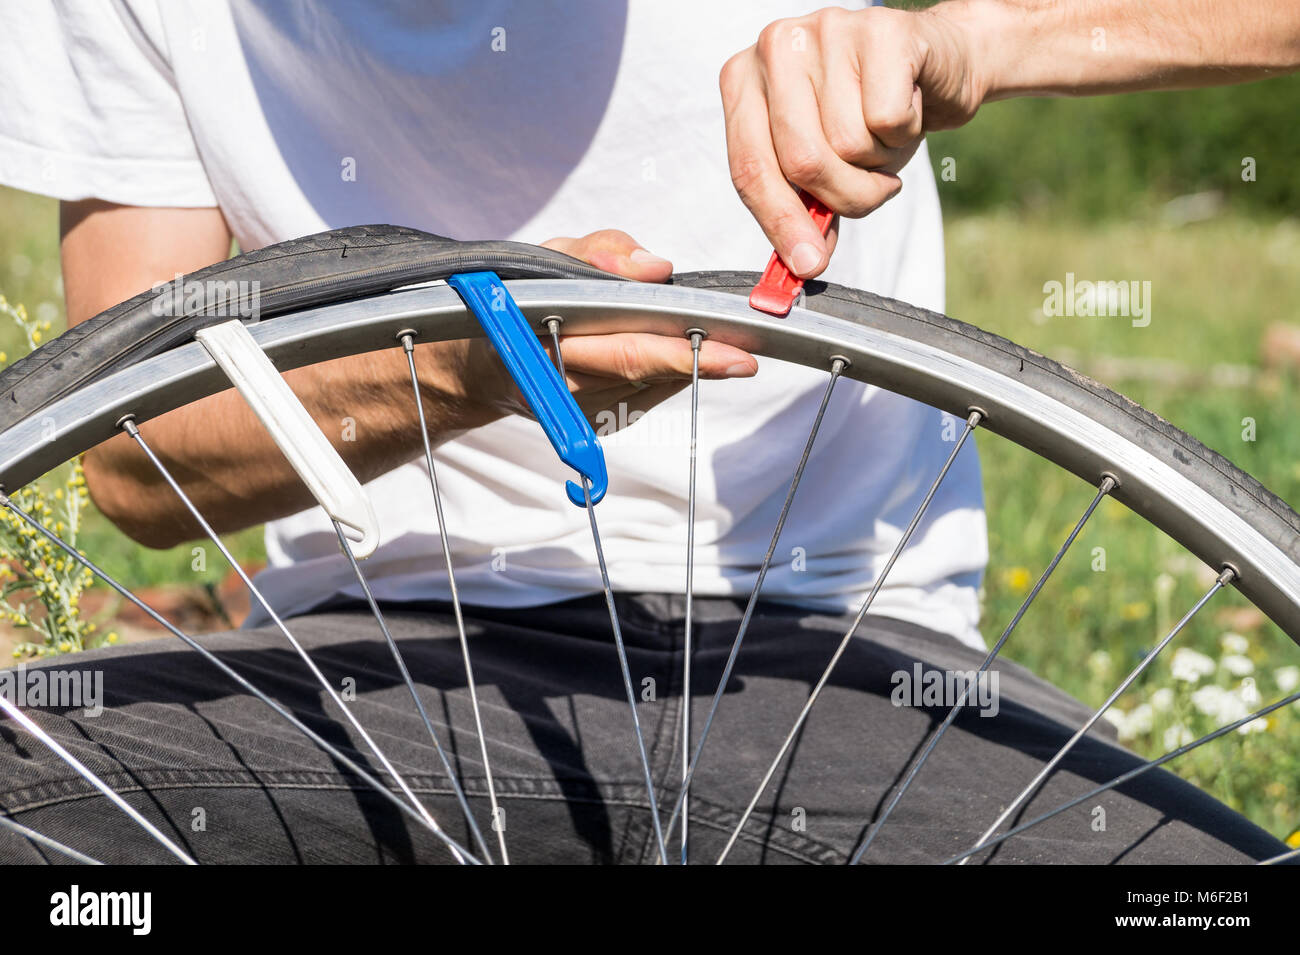 Close up image des personnes mains en utilisant les leviers des pneus pour remplacer le tube intérieur de roue de bicyclette Banque D'Images